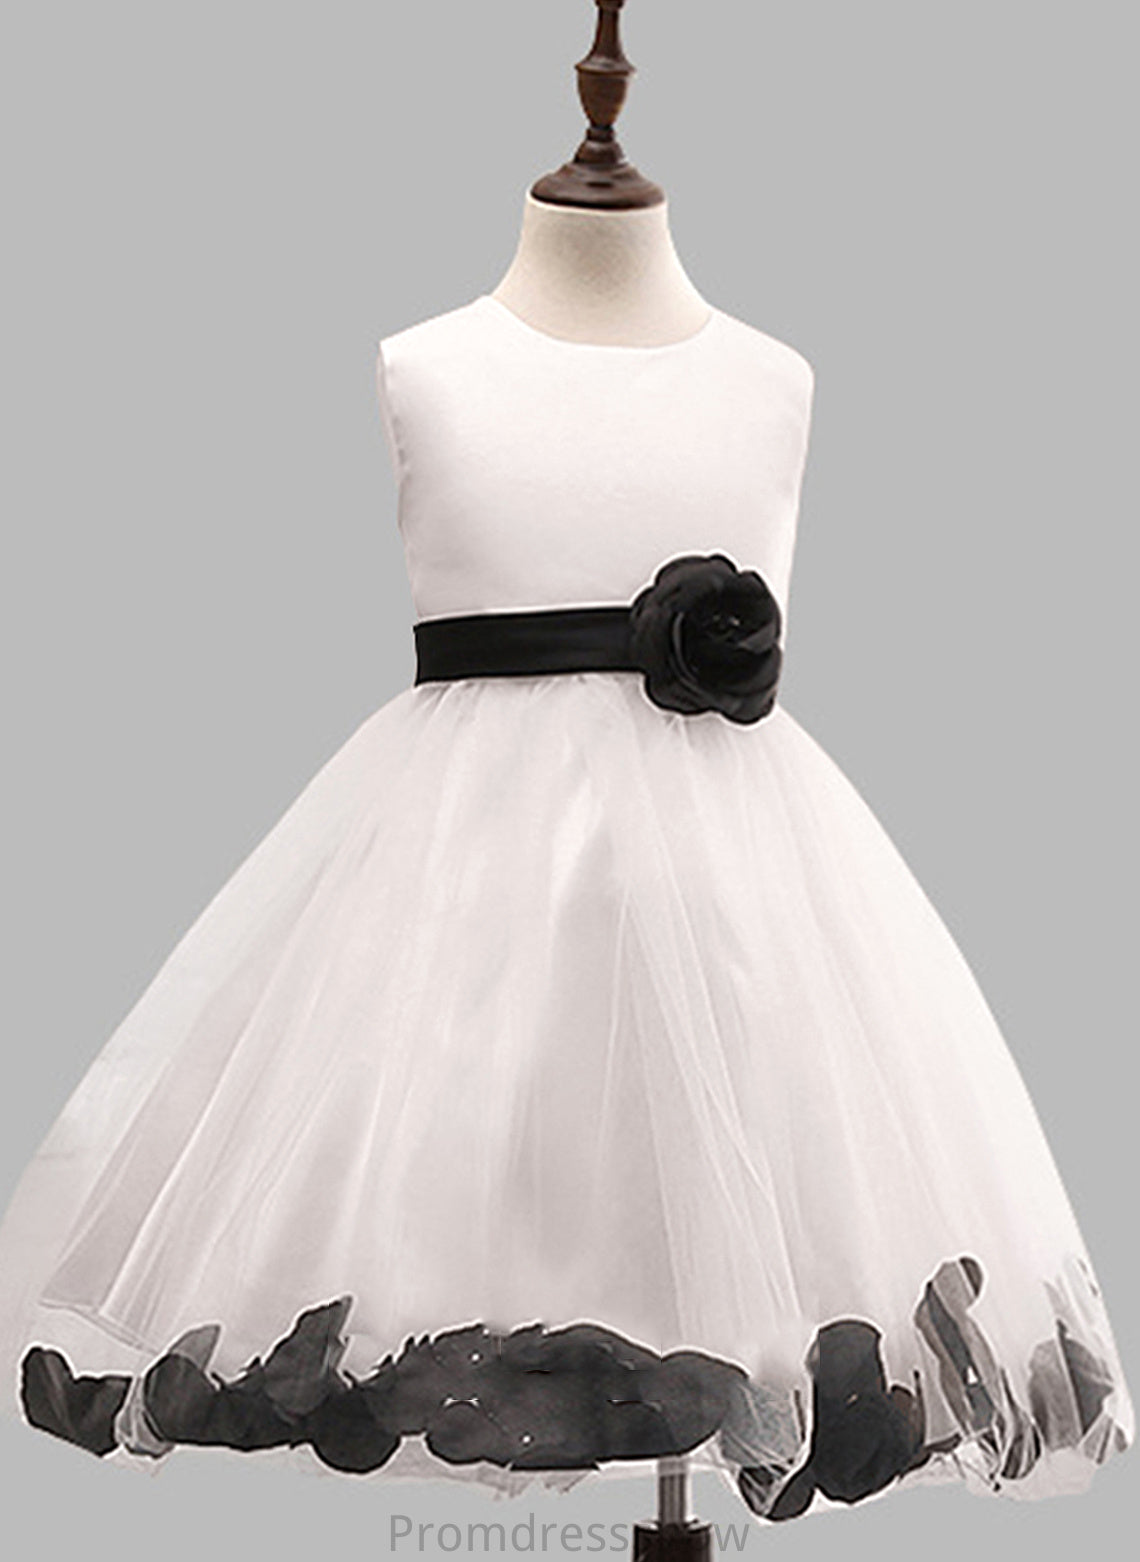 Flower Gown - Cotton LuLu Scoop Dress Girl Flower(s)/Bow(s) With Knee-length Sleeveless Ball Flower Girl Dresses Neck Blends